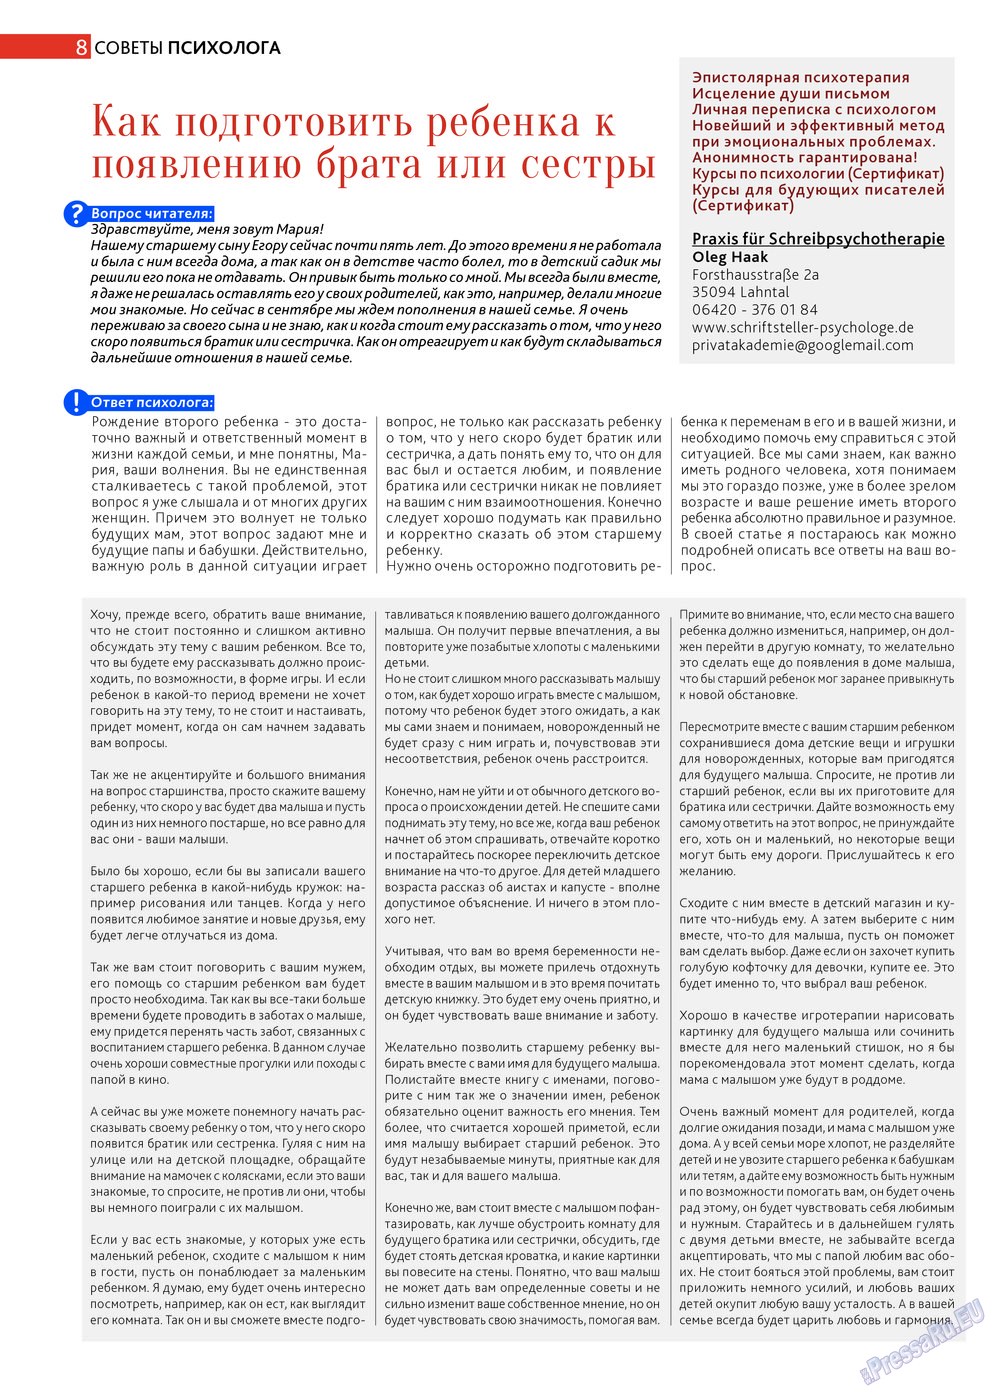 Афиша Augsburg (журнал). 2013 год, номер 5, стр. 8